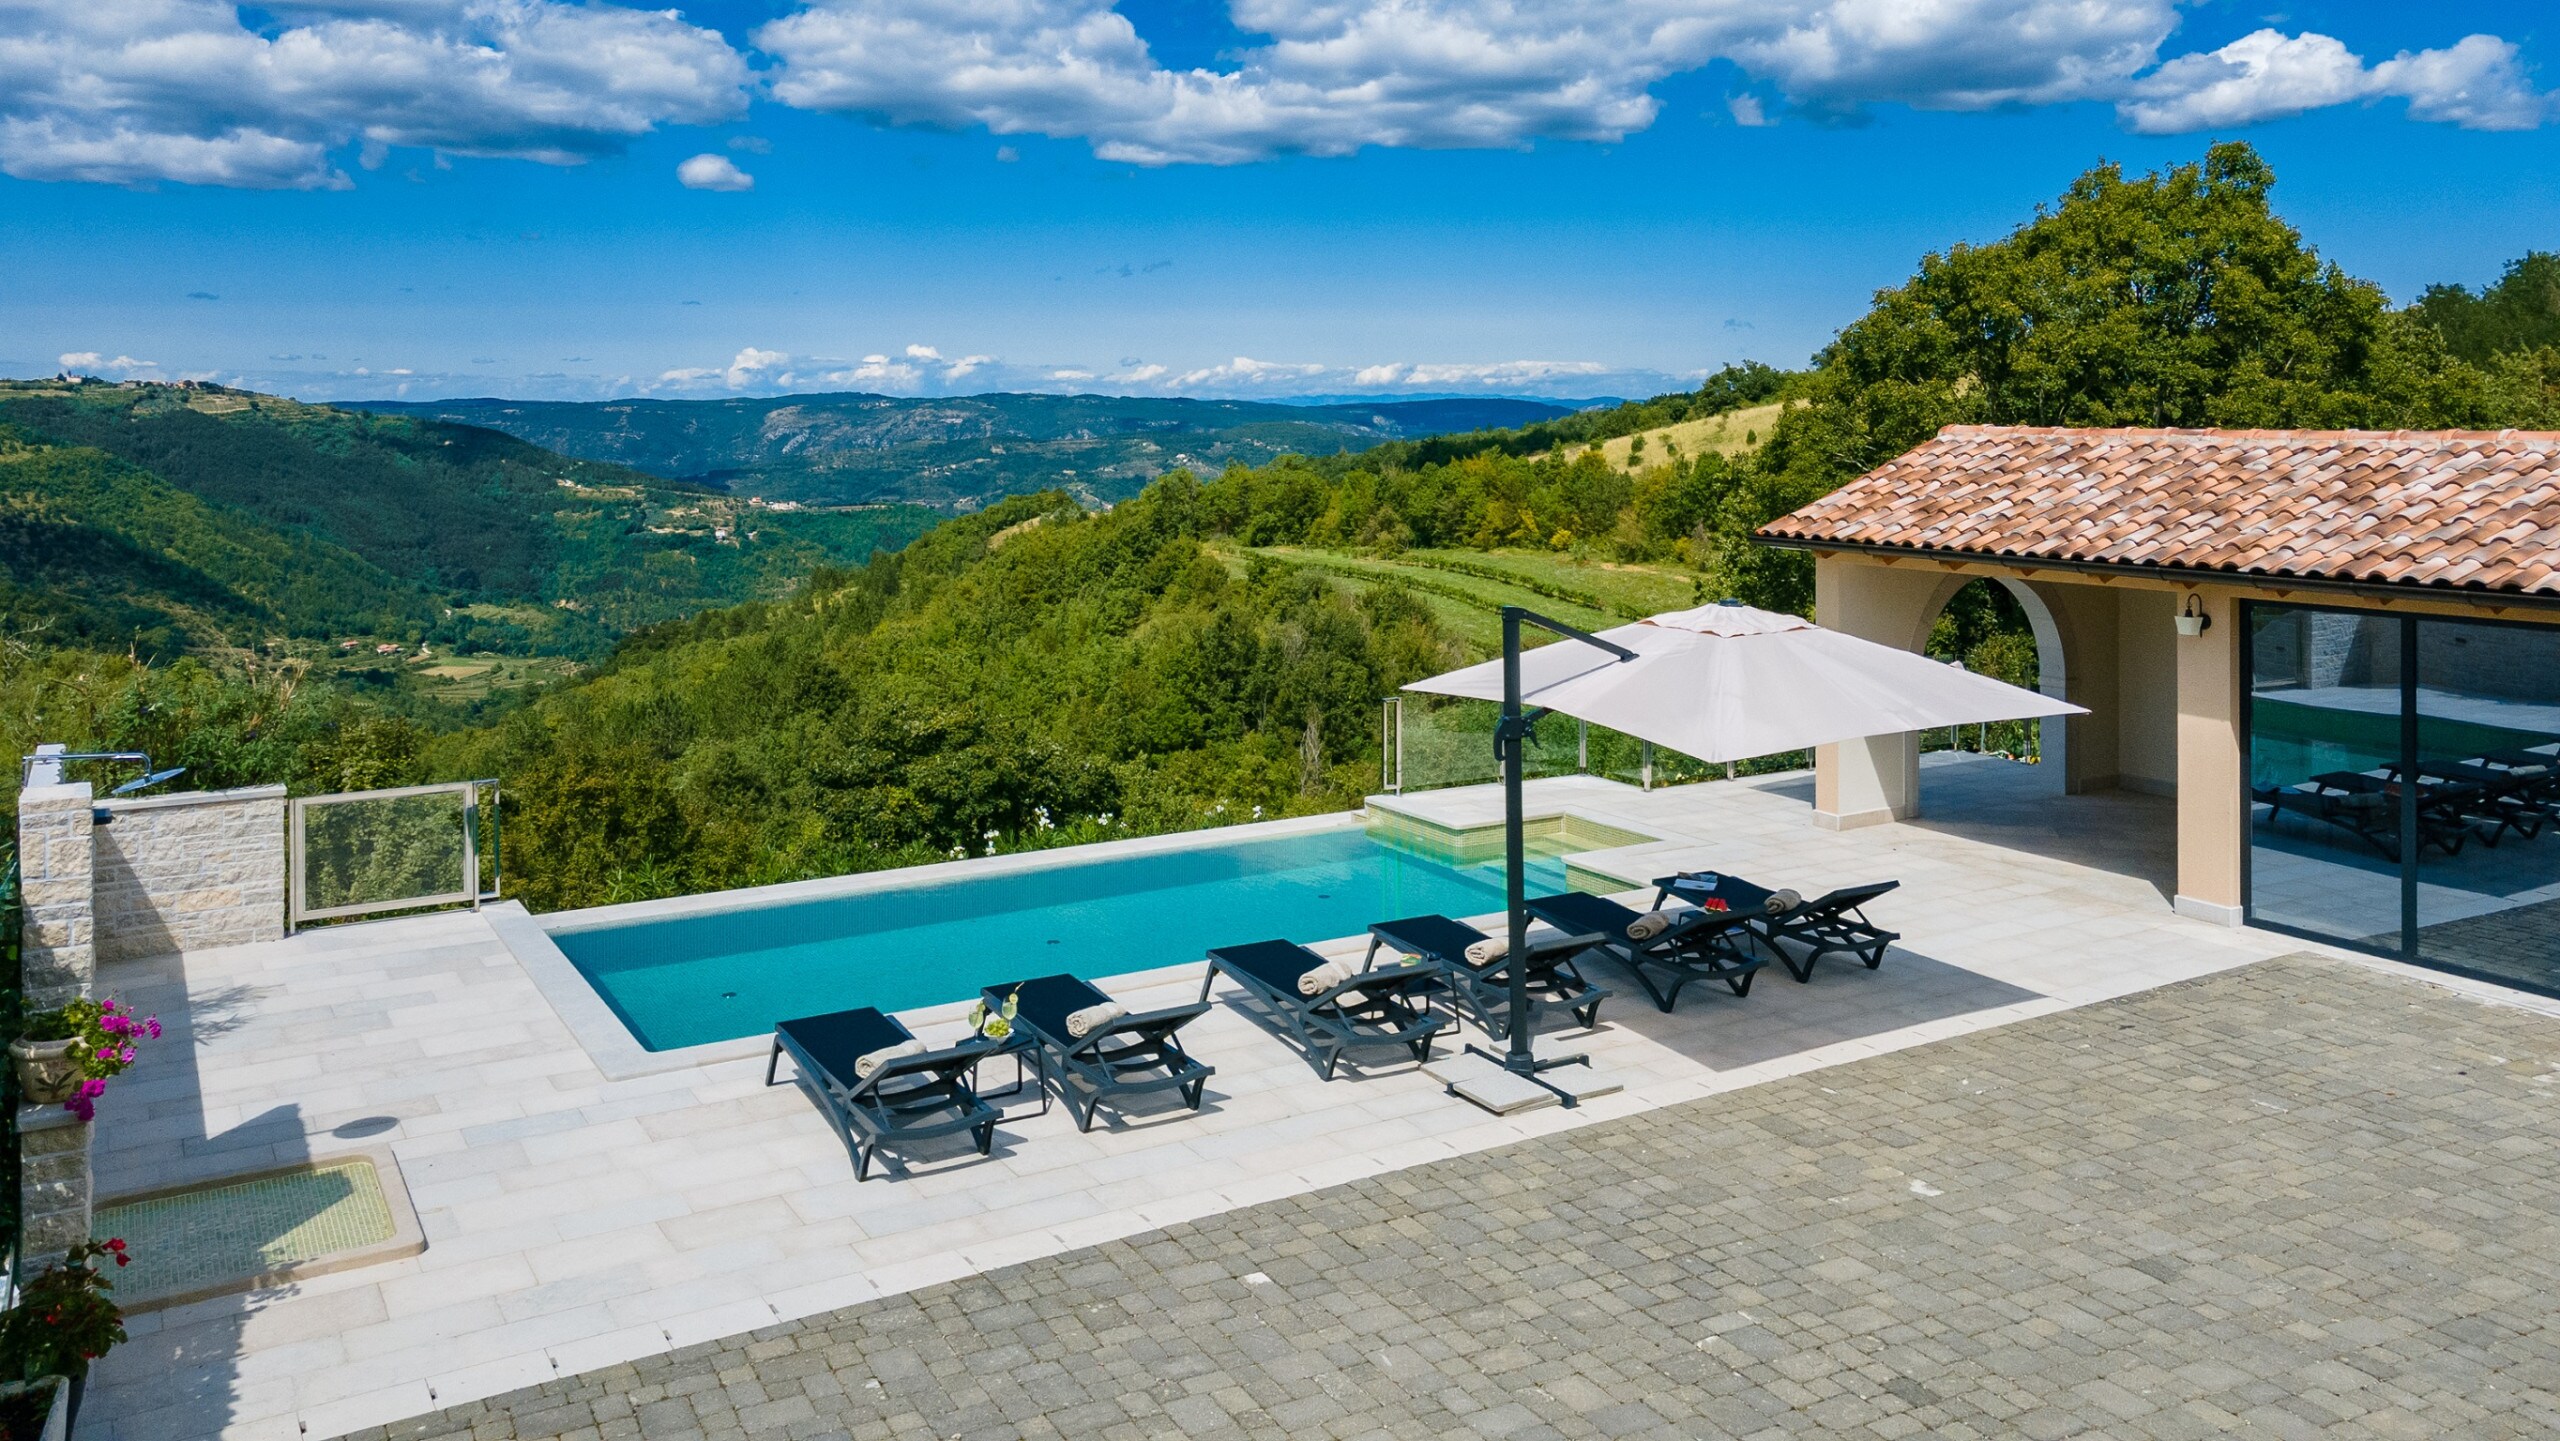 Property Image 2 - Poolincluded - Villa Grazia